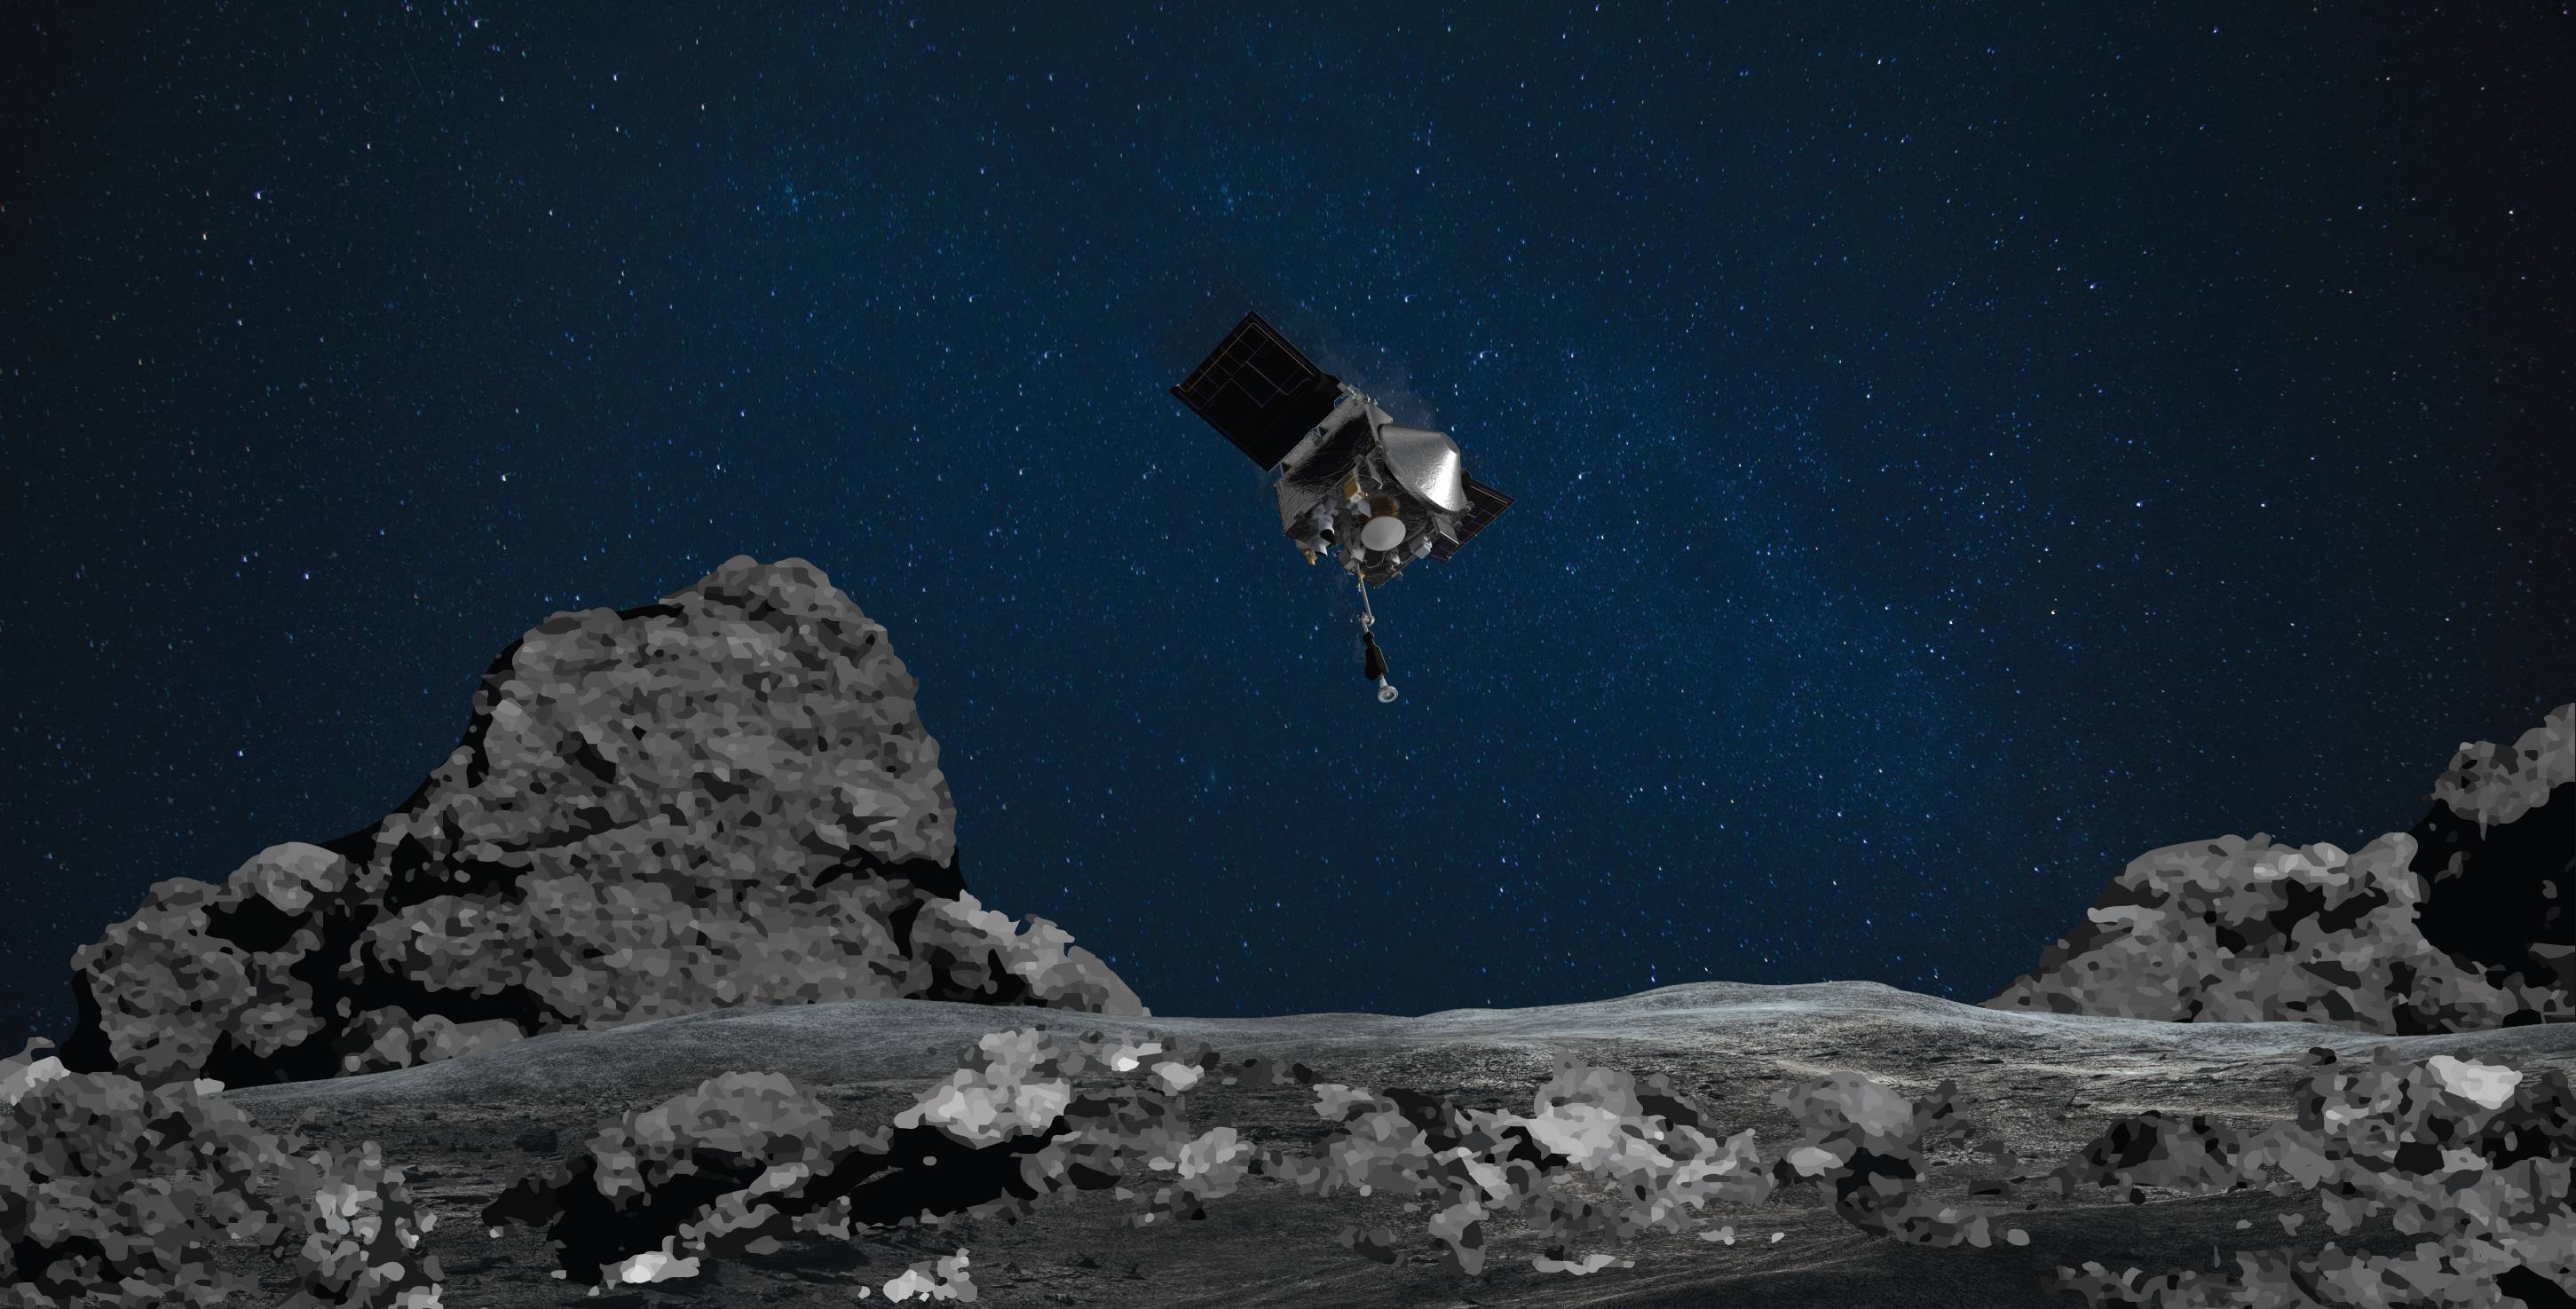 o - Proprio ora, l’umanità ha completato la prima missione di difesa planetaria in assoluto! “Walking on the Moon” si sta avverando